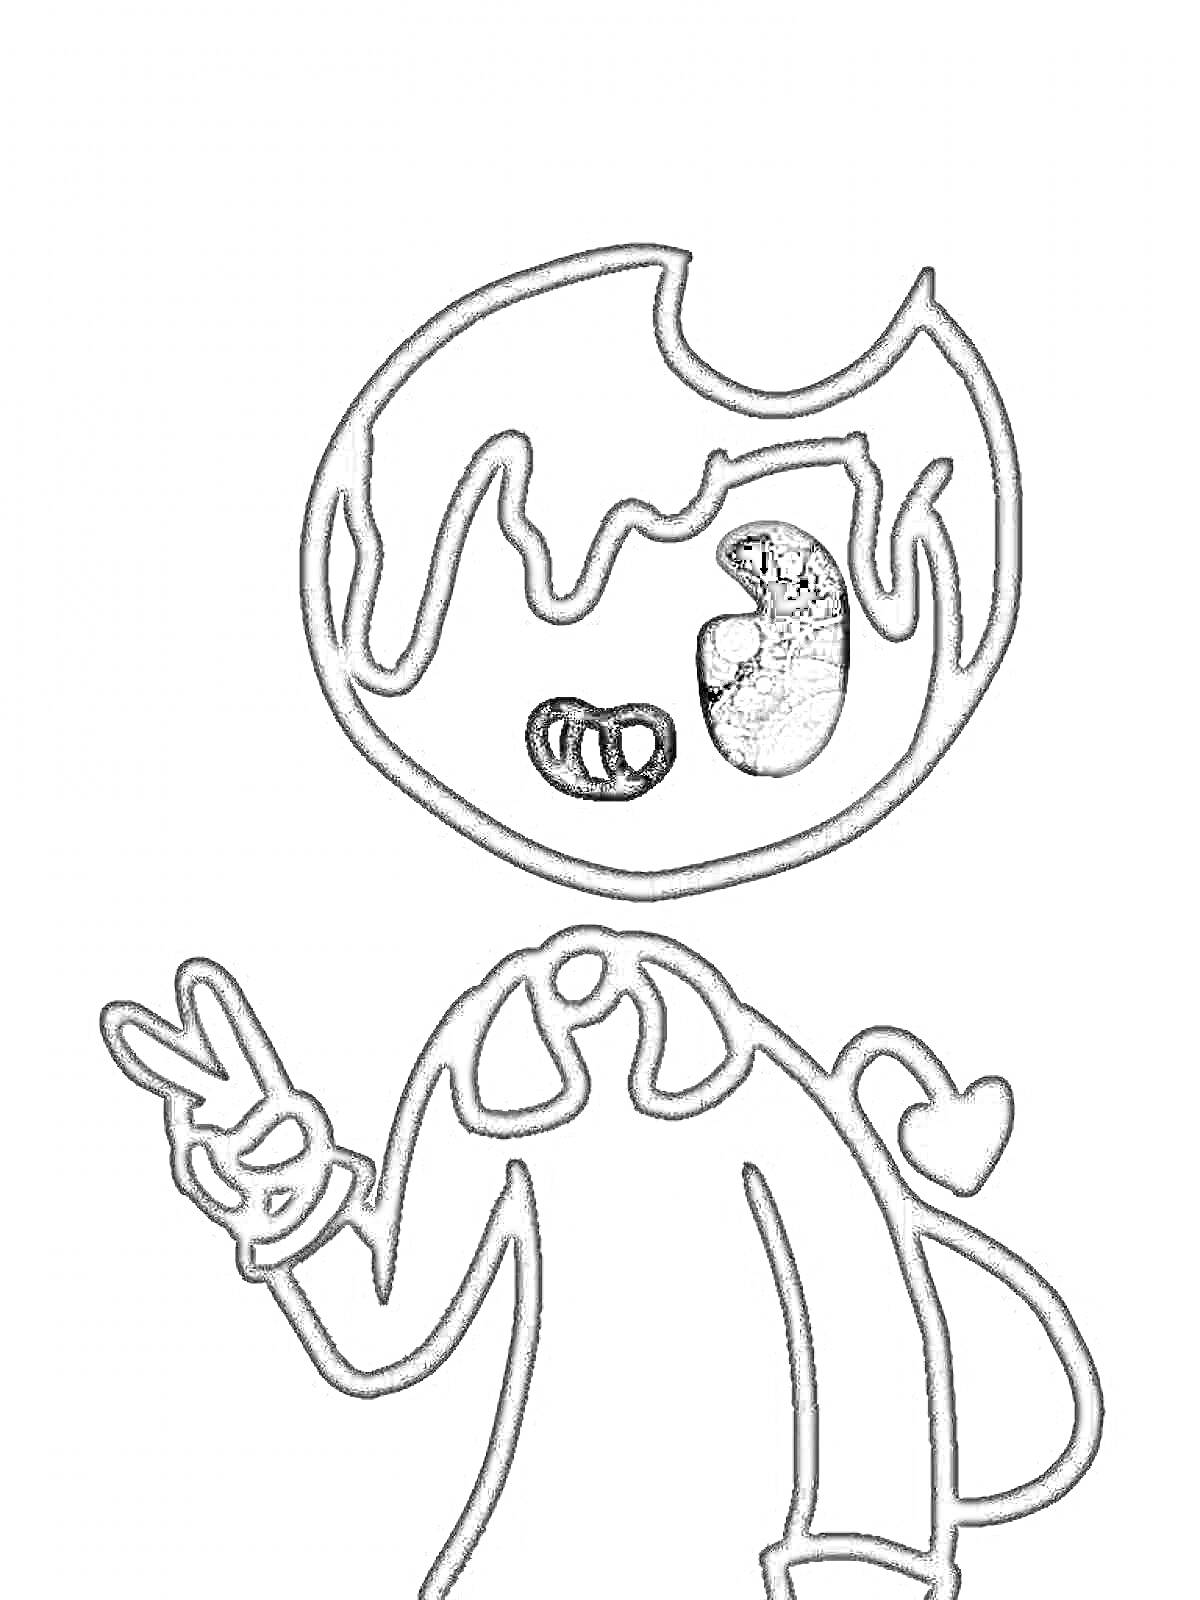 РаскраскаРаскраска с изображением персонажа Bendy, показывающего знак мира, с сердцем на спине